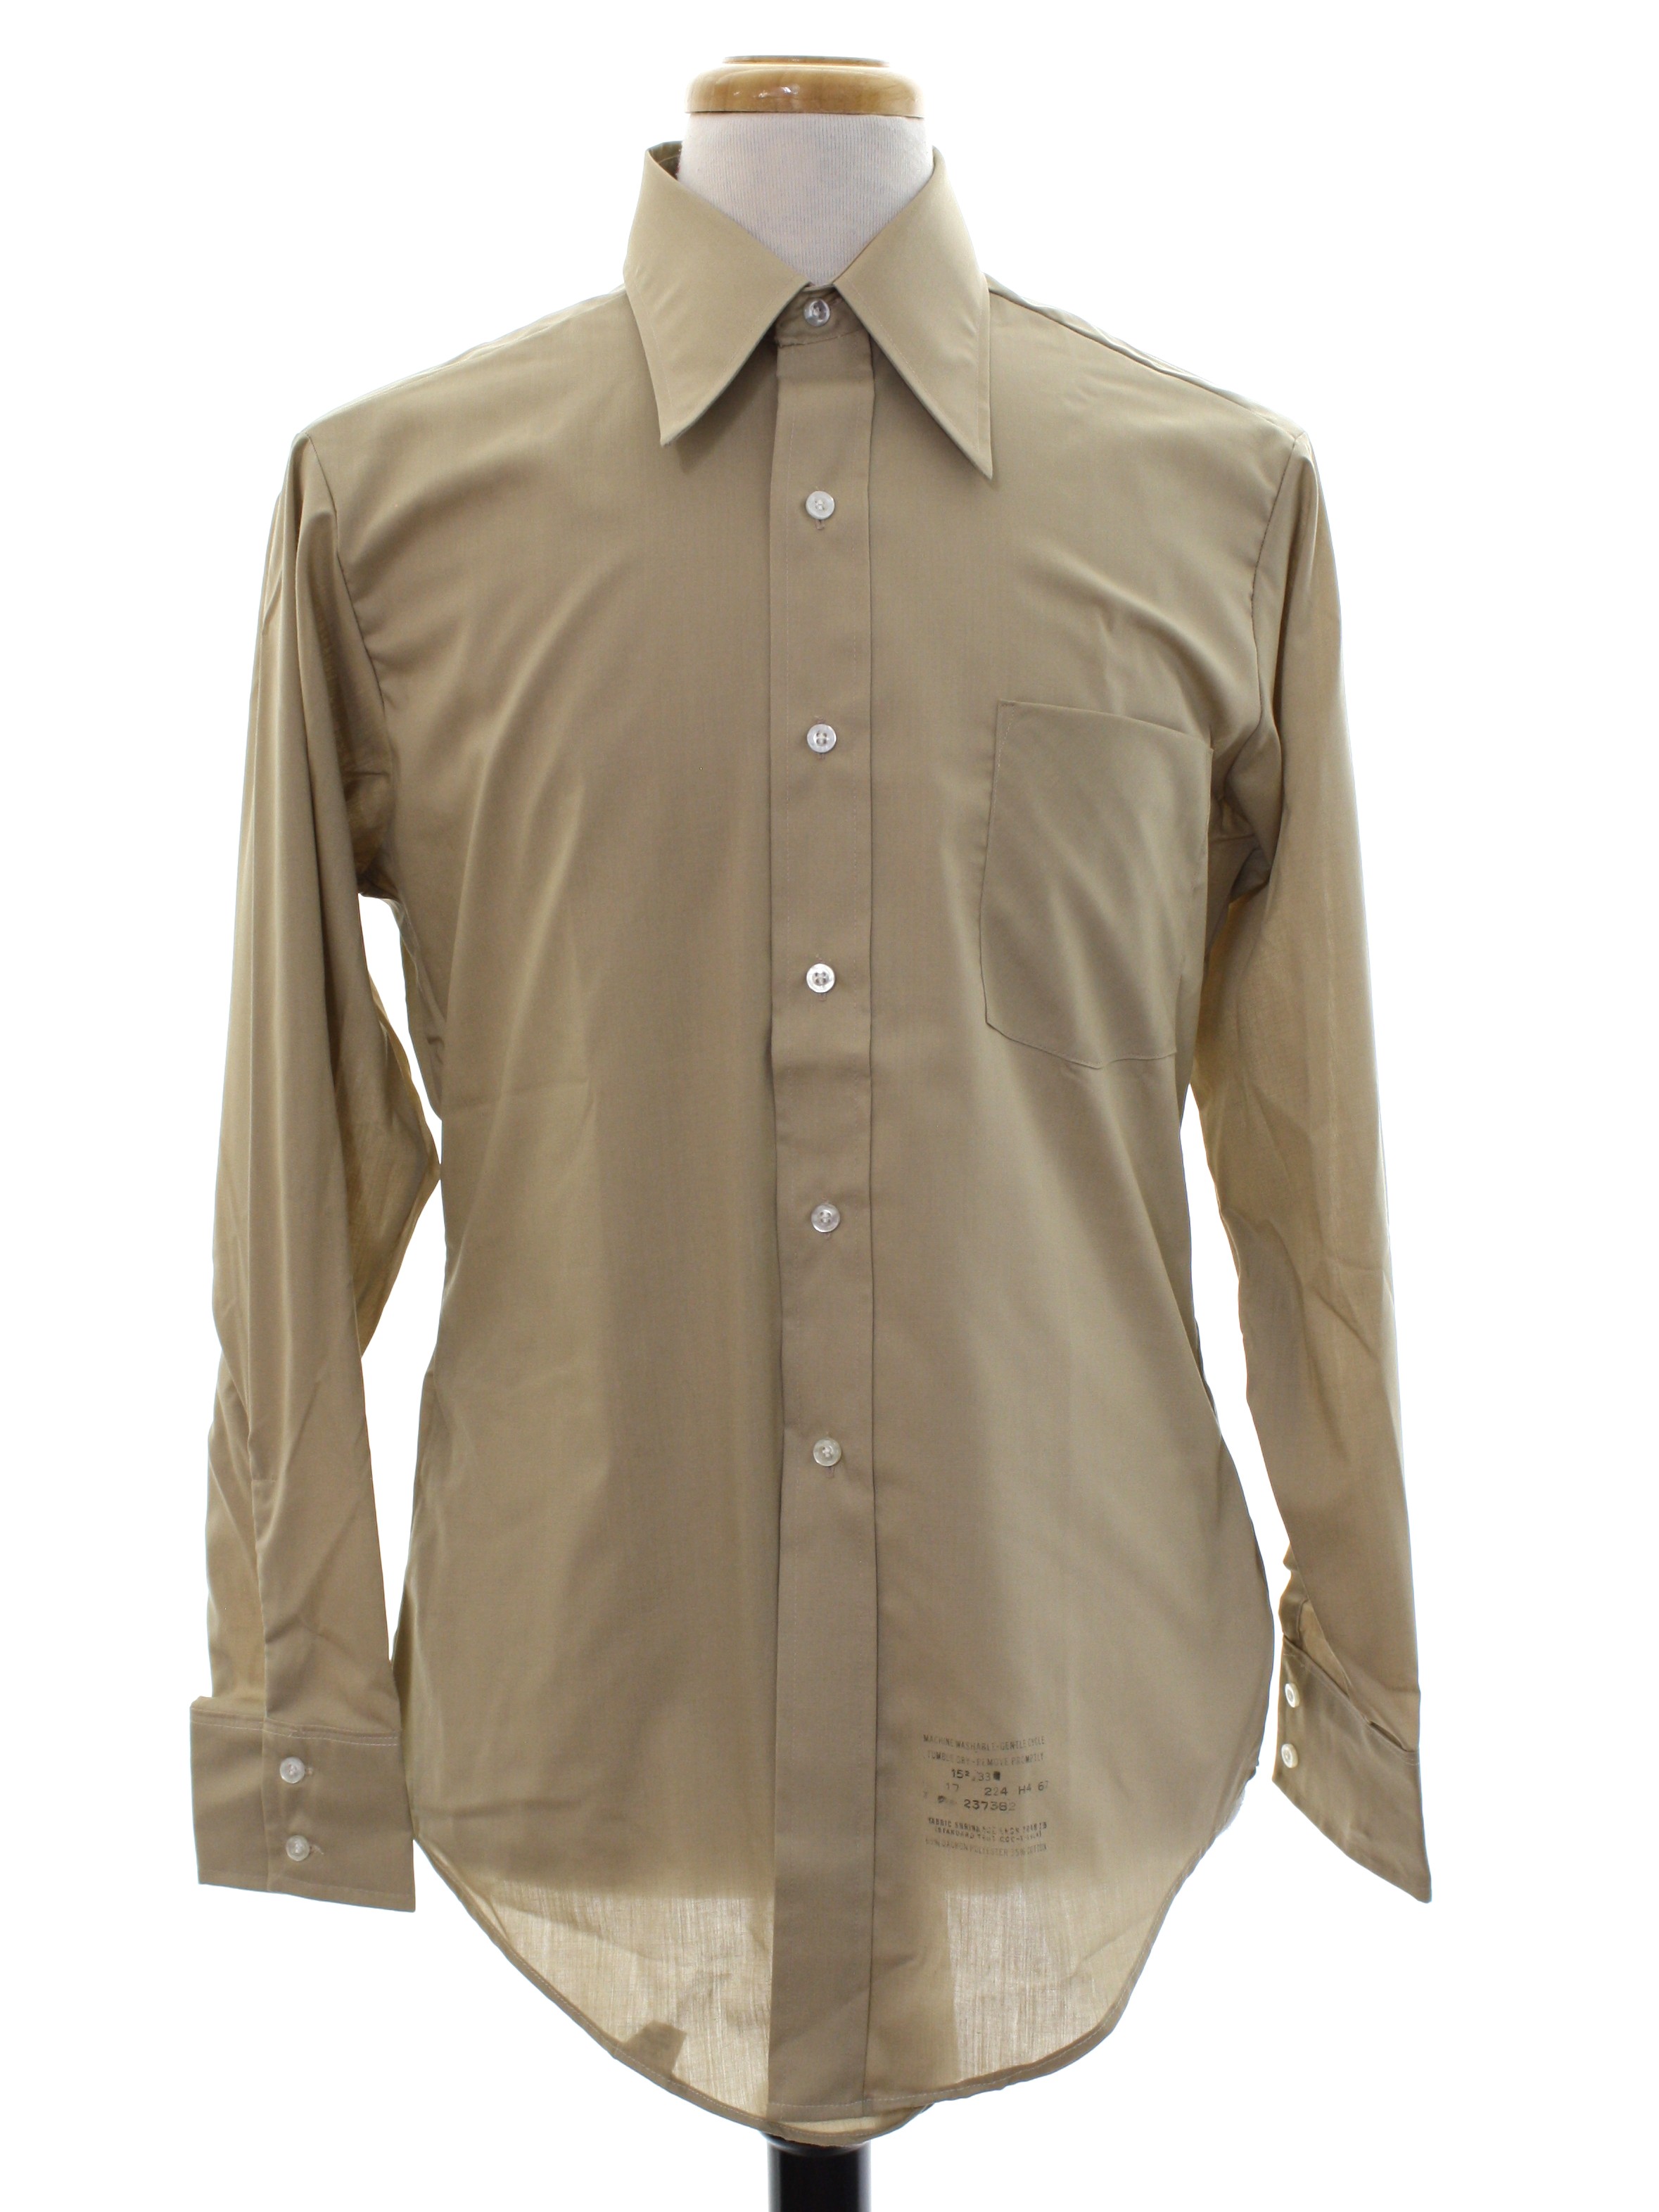 Retro 1960's Shirt (Van Heusen 417 Vanopress) : Late 60s -Van Heusen ...